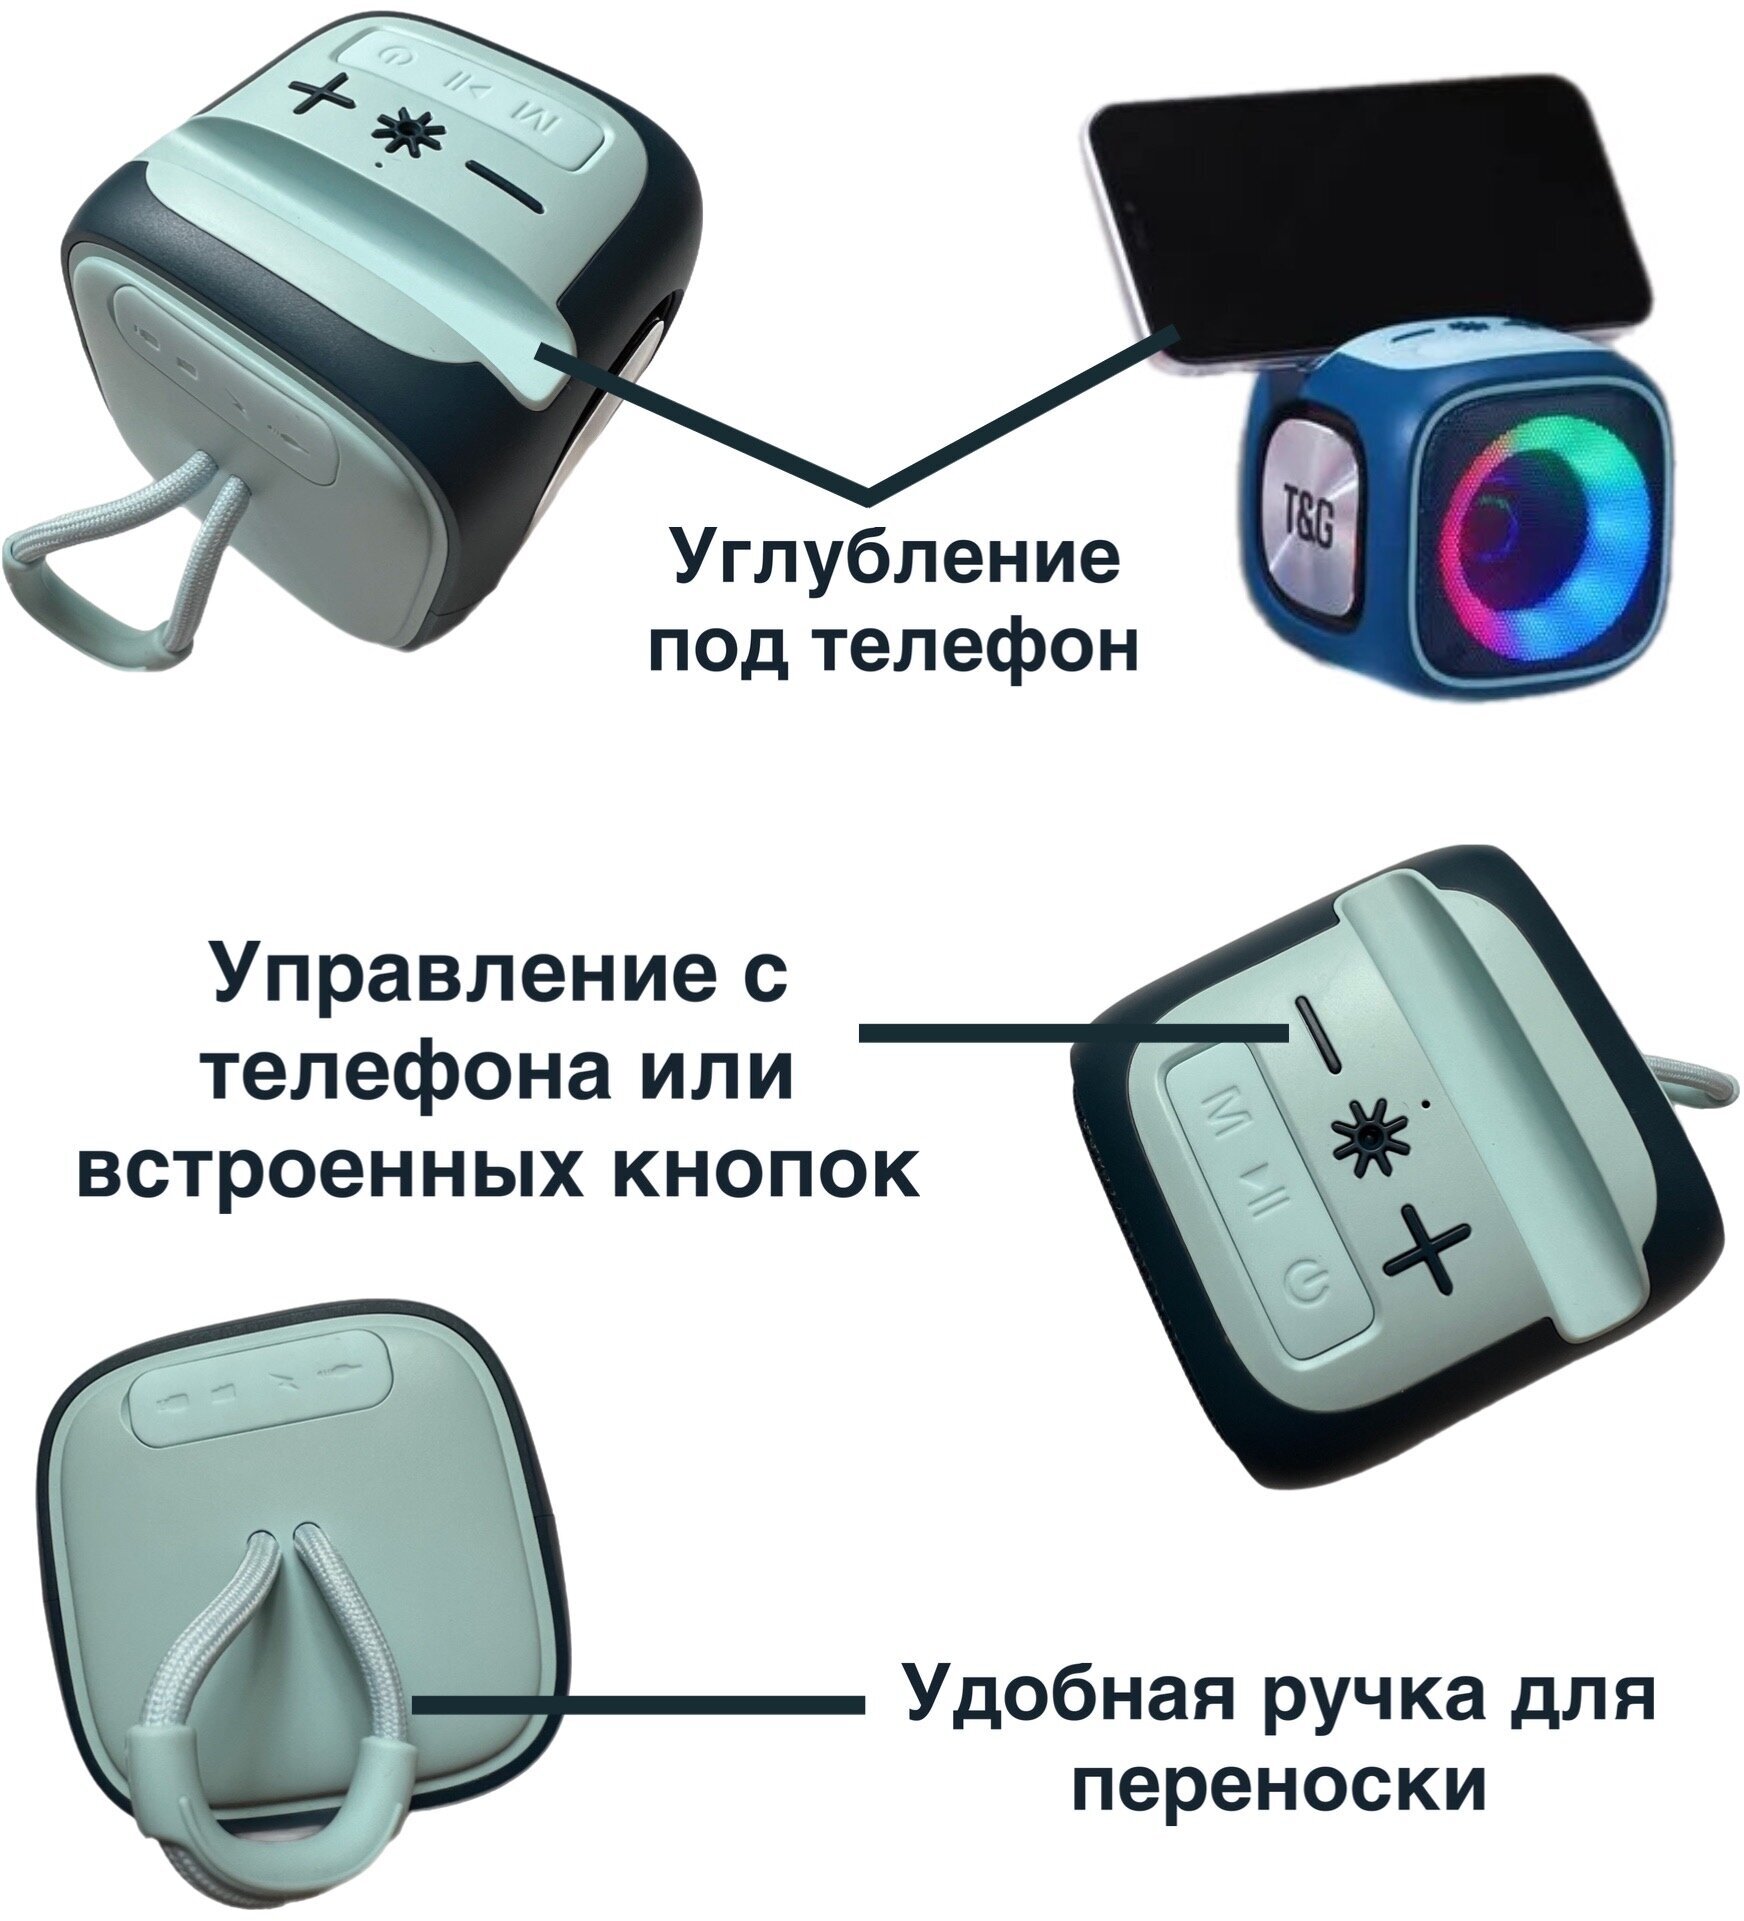 Беспроводная портативная Bluetooth колонка с подсветкой TG-359 - синяя